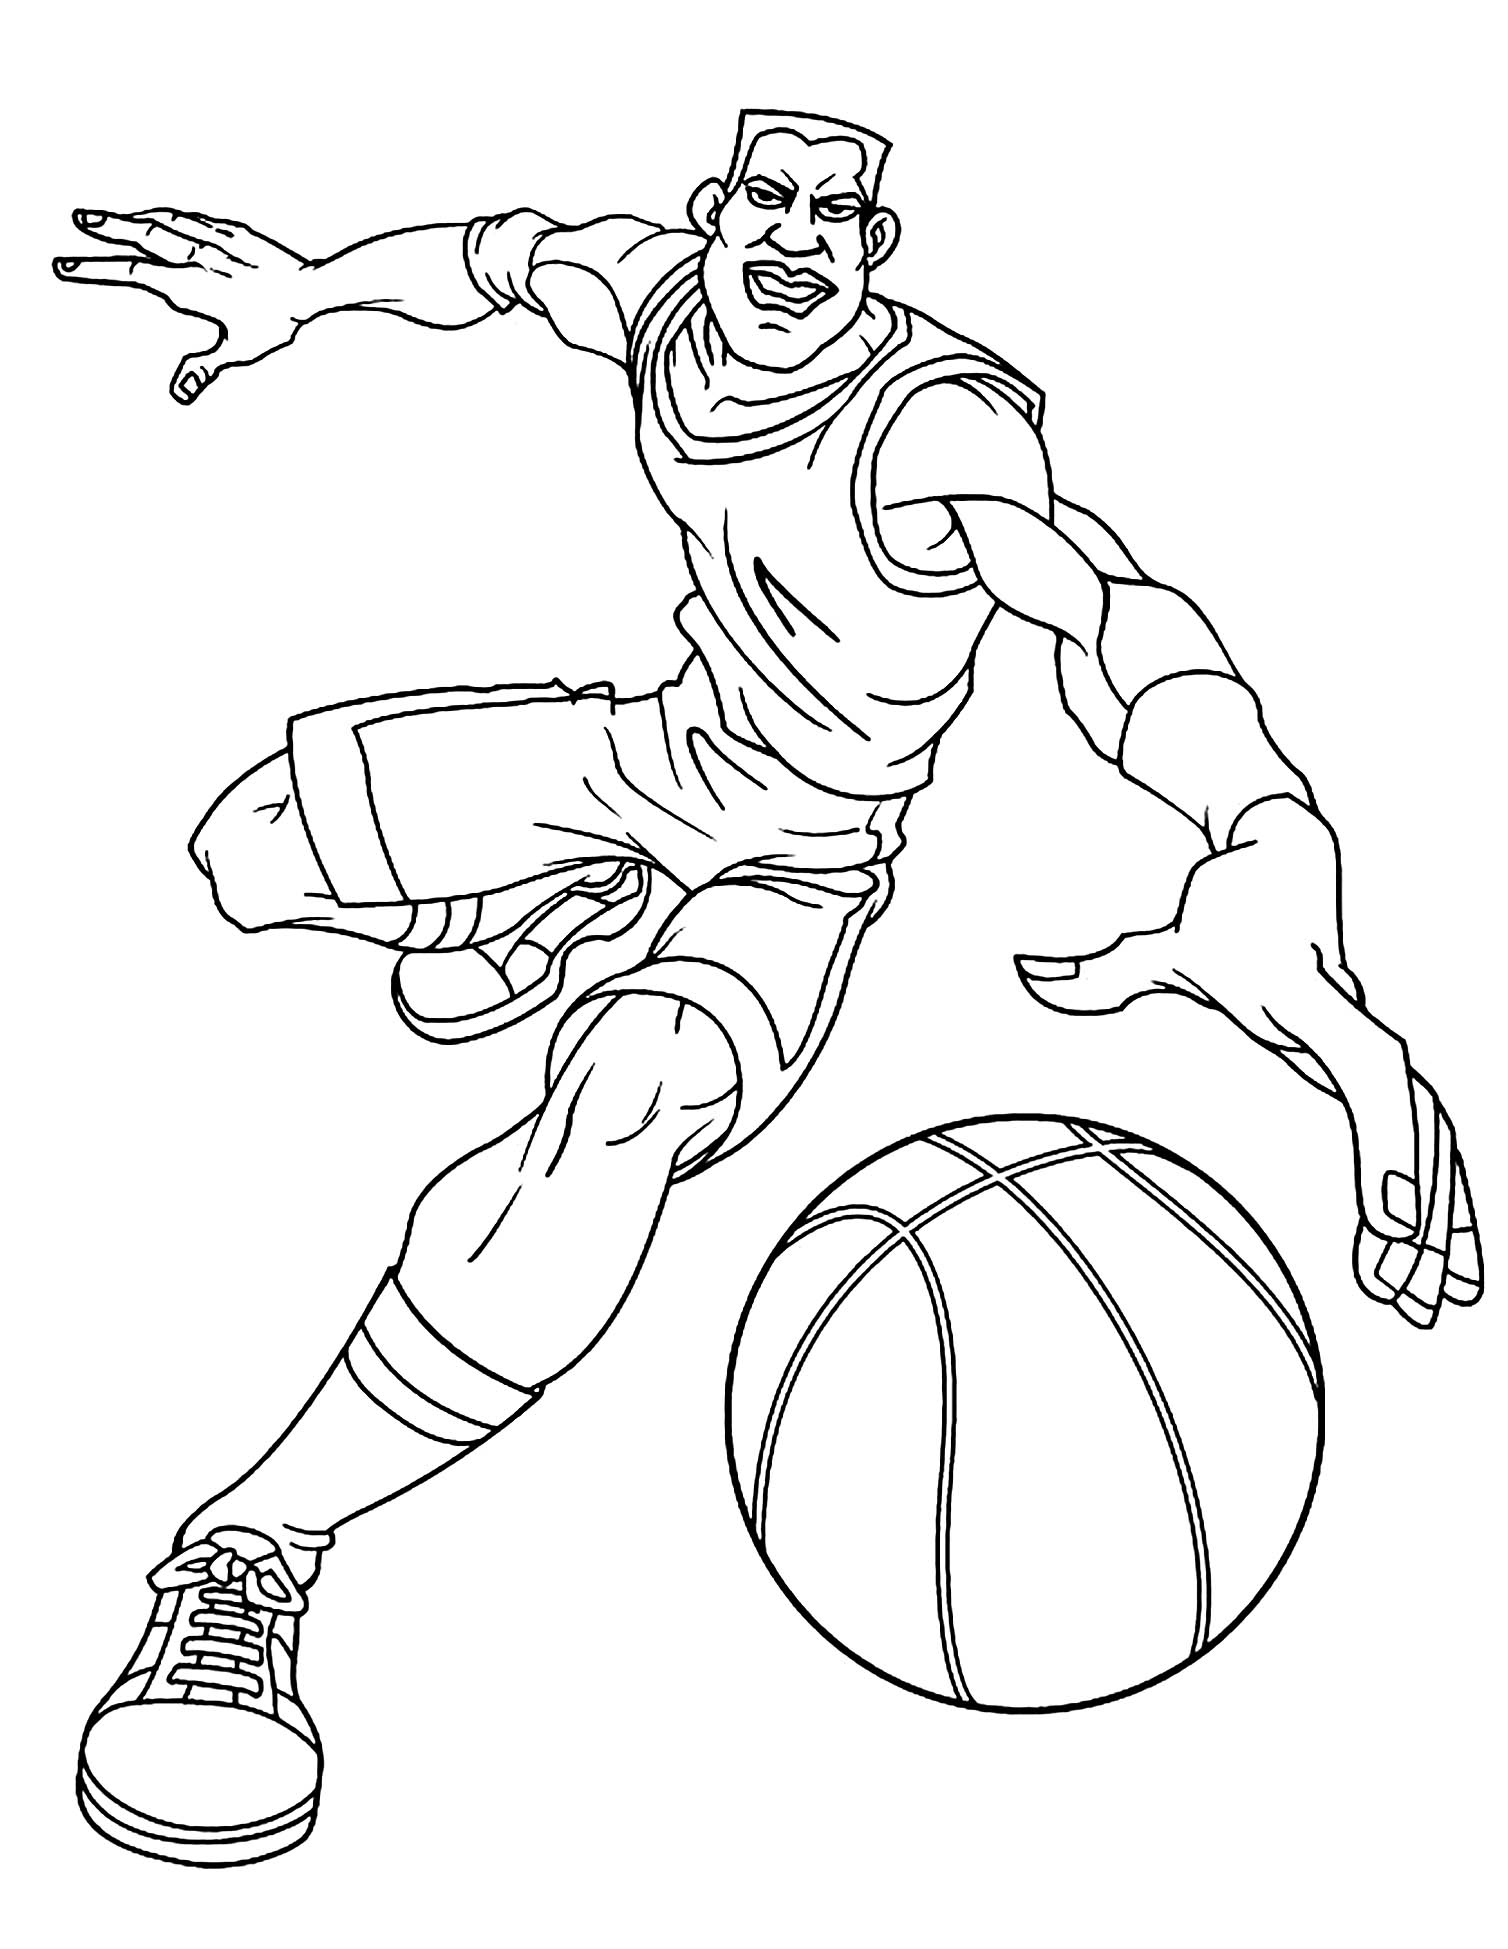 Dibujos para colorear de Baloncesto para niños